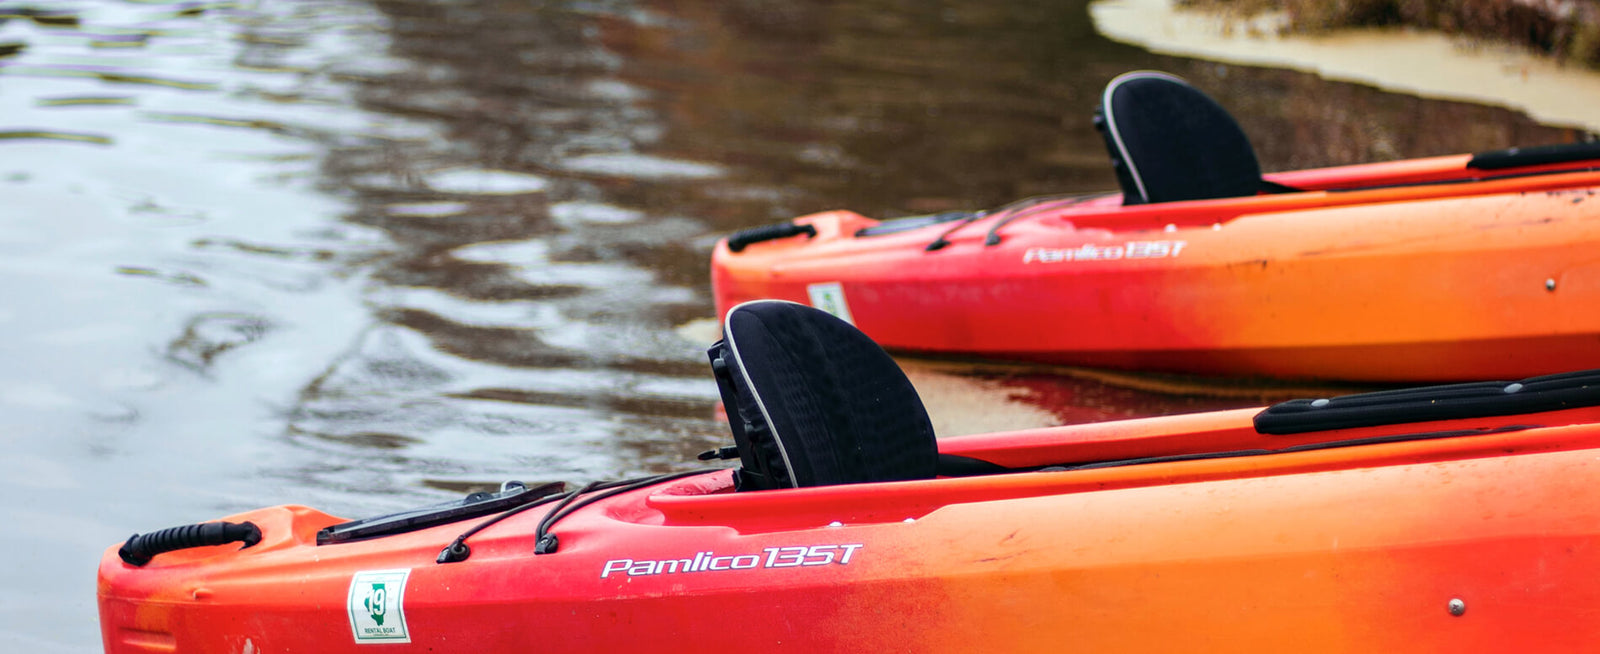 Kayak Seat Cushion Soft Kayak Seat Pad for Fishing Kayak Accessories Sports